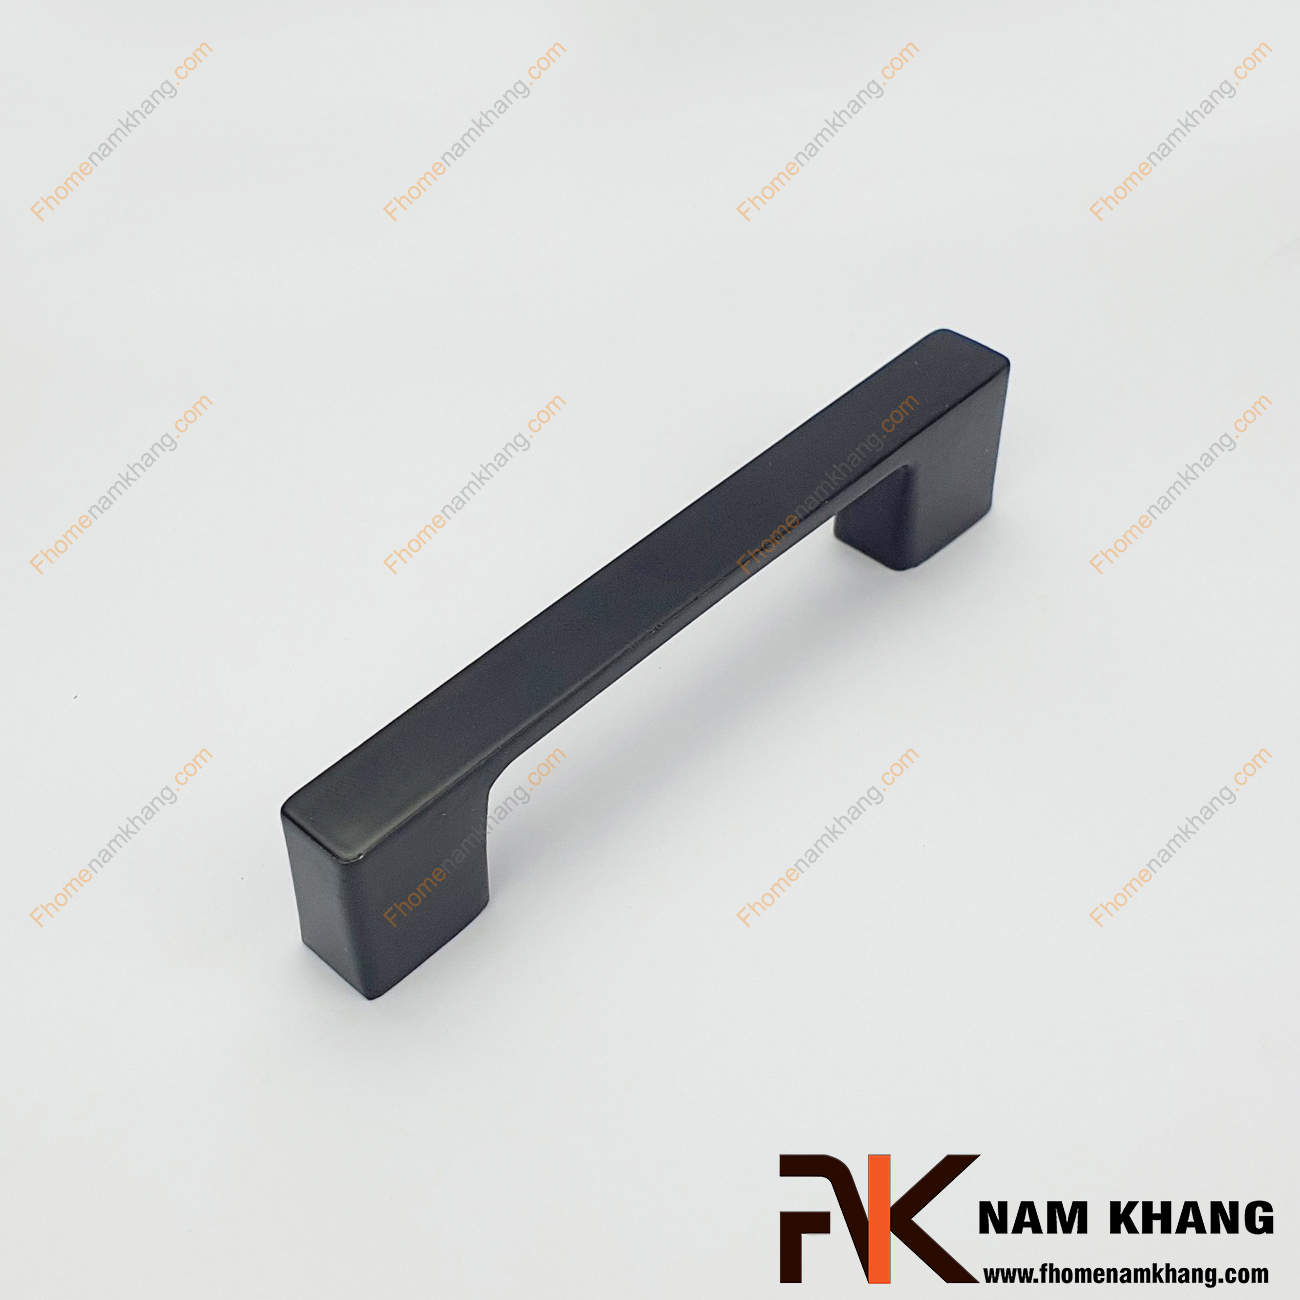 Tay nắm tủ màu đen dạng thanh NK143L-D được thiết kế dựa trên hợp kim chất lượng khuôn dạng vuông tạo cảm giác cầm nắm vô cùng chắc chắn và thao tác thực hiện cũng vô cùng dễ dàng.